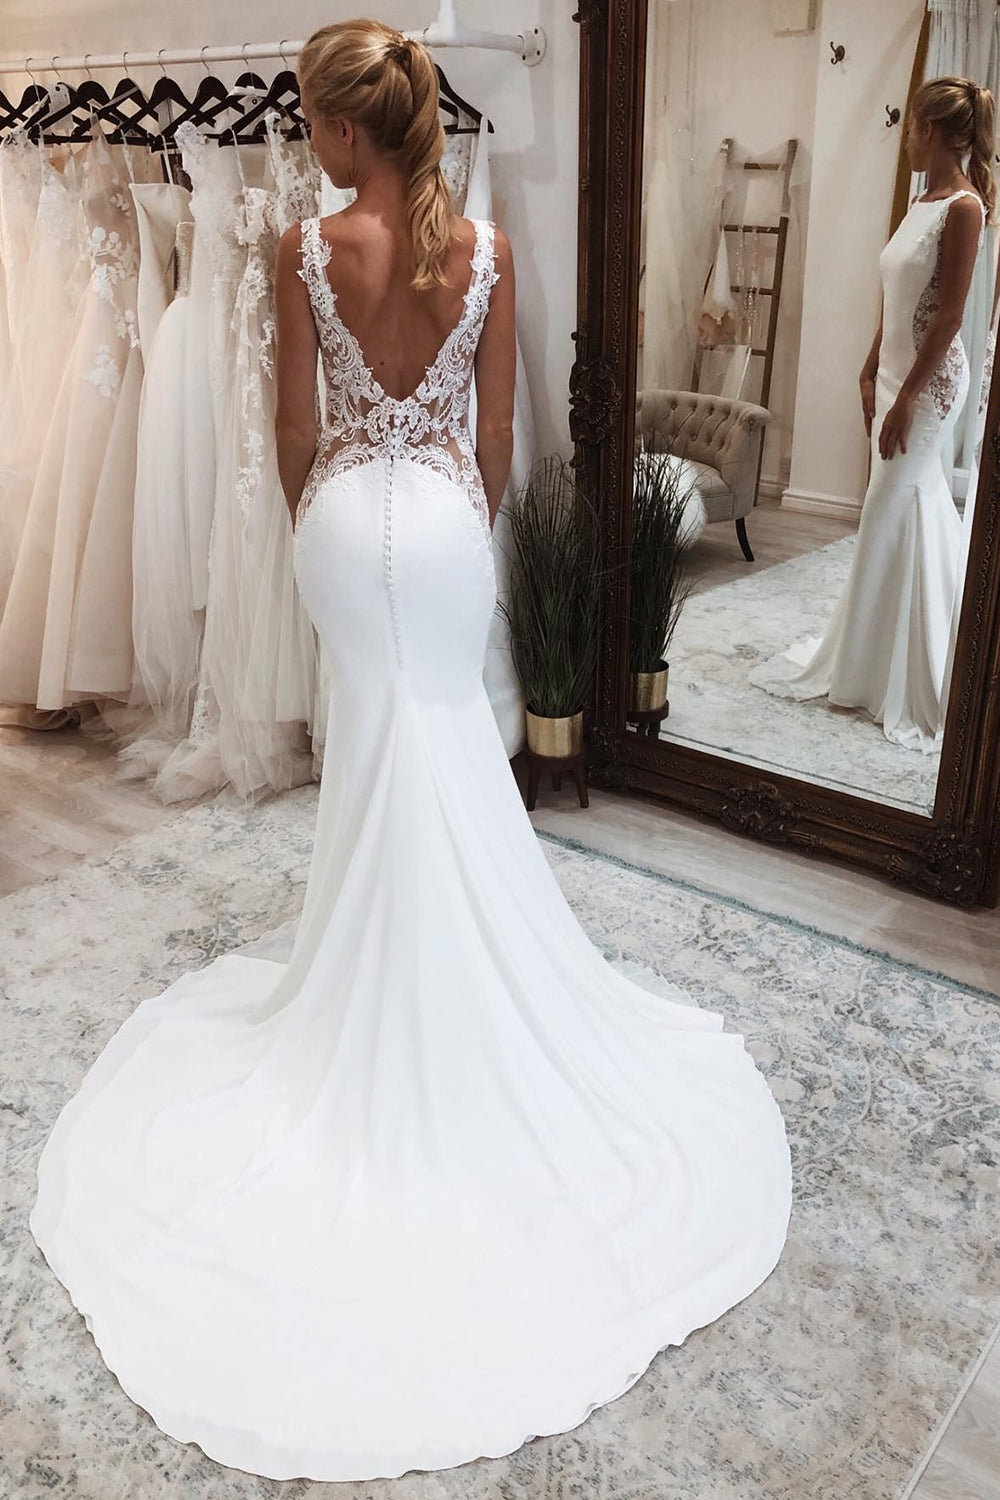 Dulce | White Long Mermaid Boho Wedding Dress with Lace